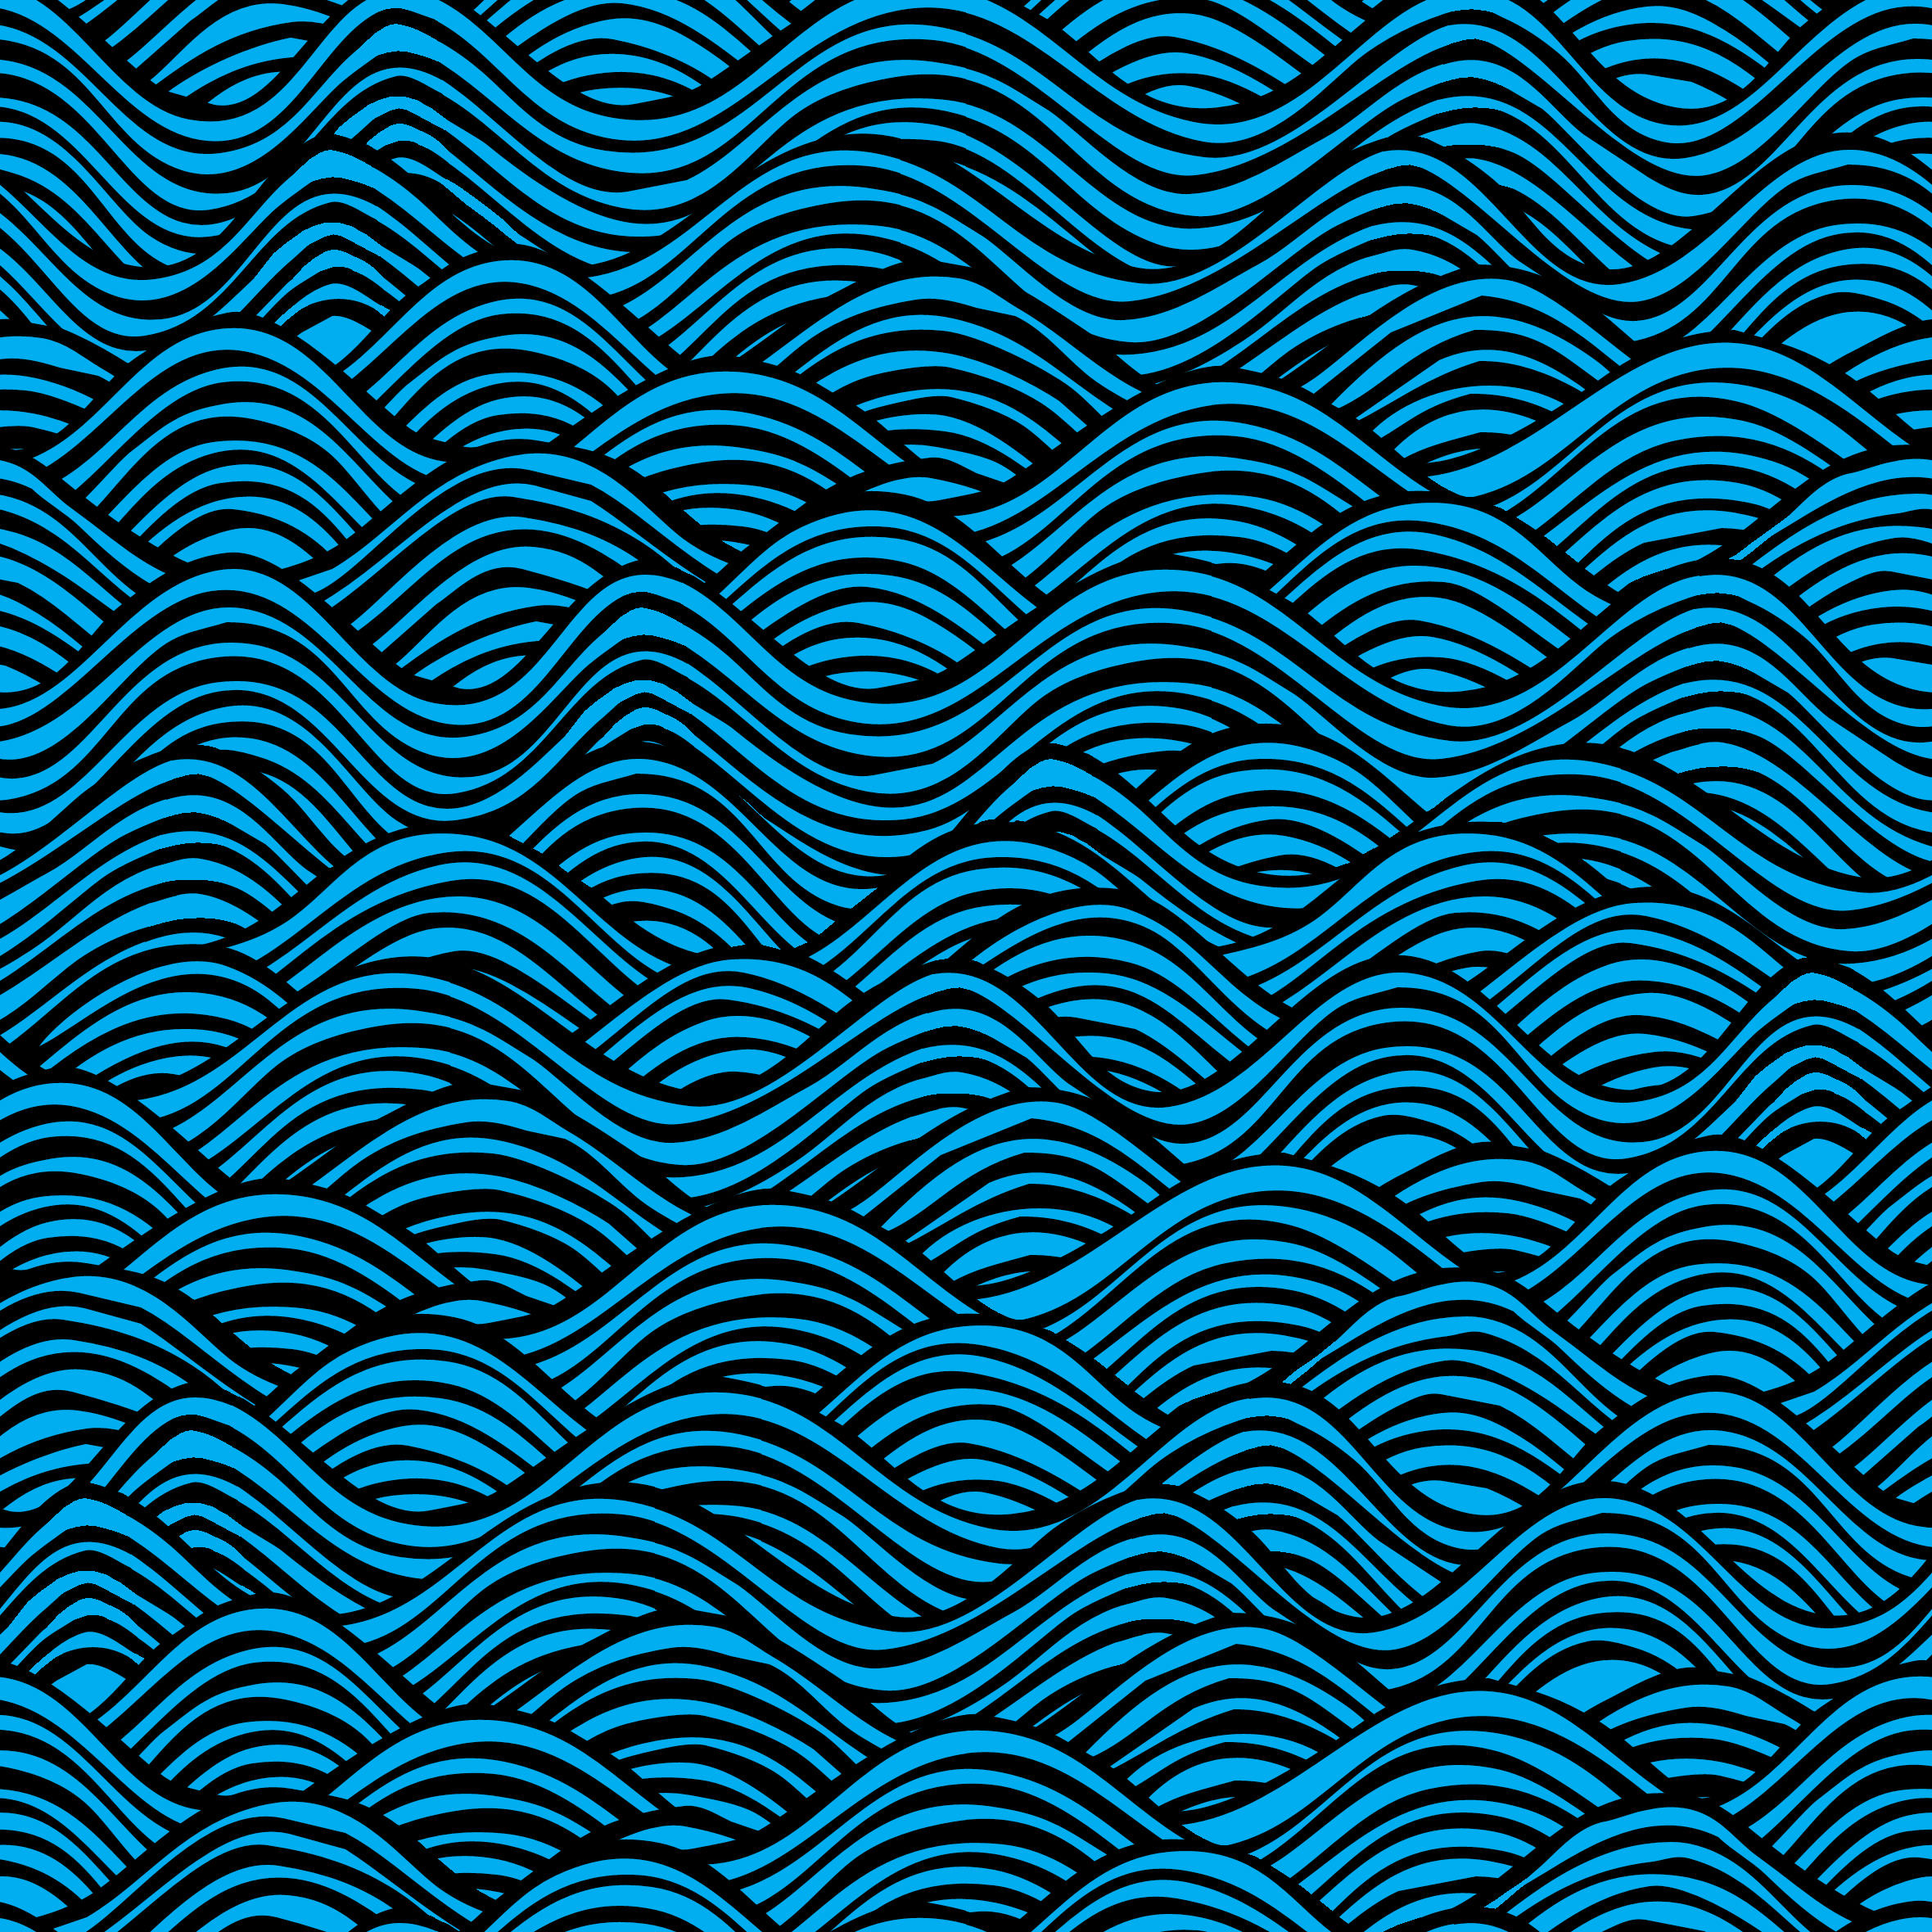 Water Pattern by nemaakos on DeviantArt
 Ocean Water Pattern